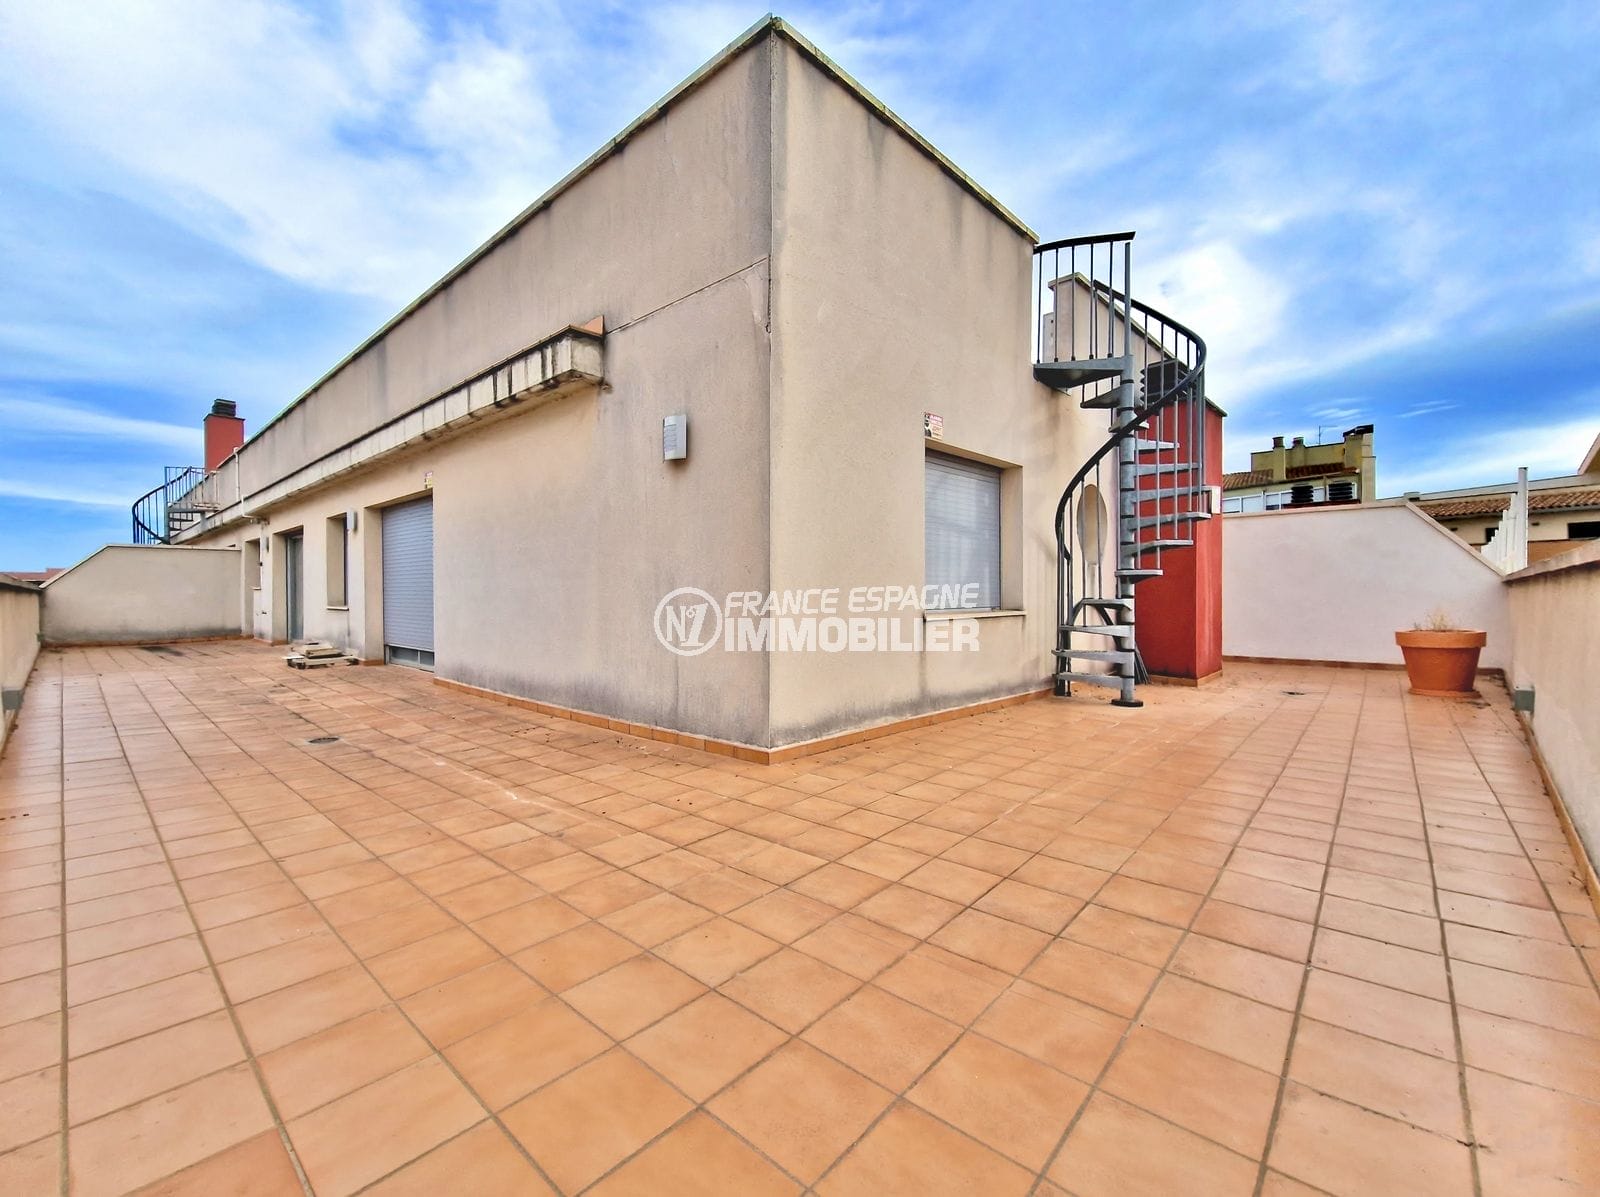 Figueres - atico 3 habitaciones terraza 77 m², parking privado sotano